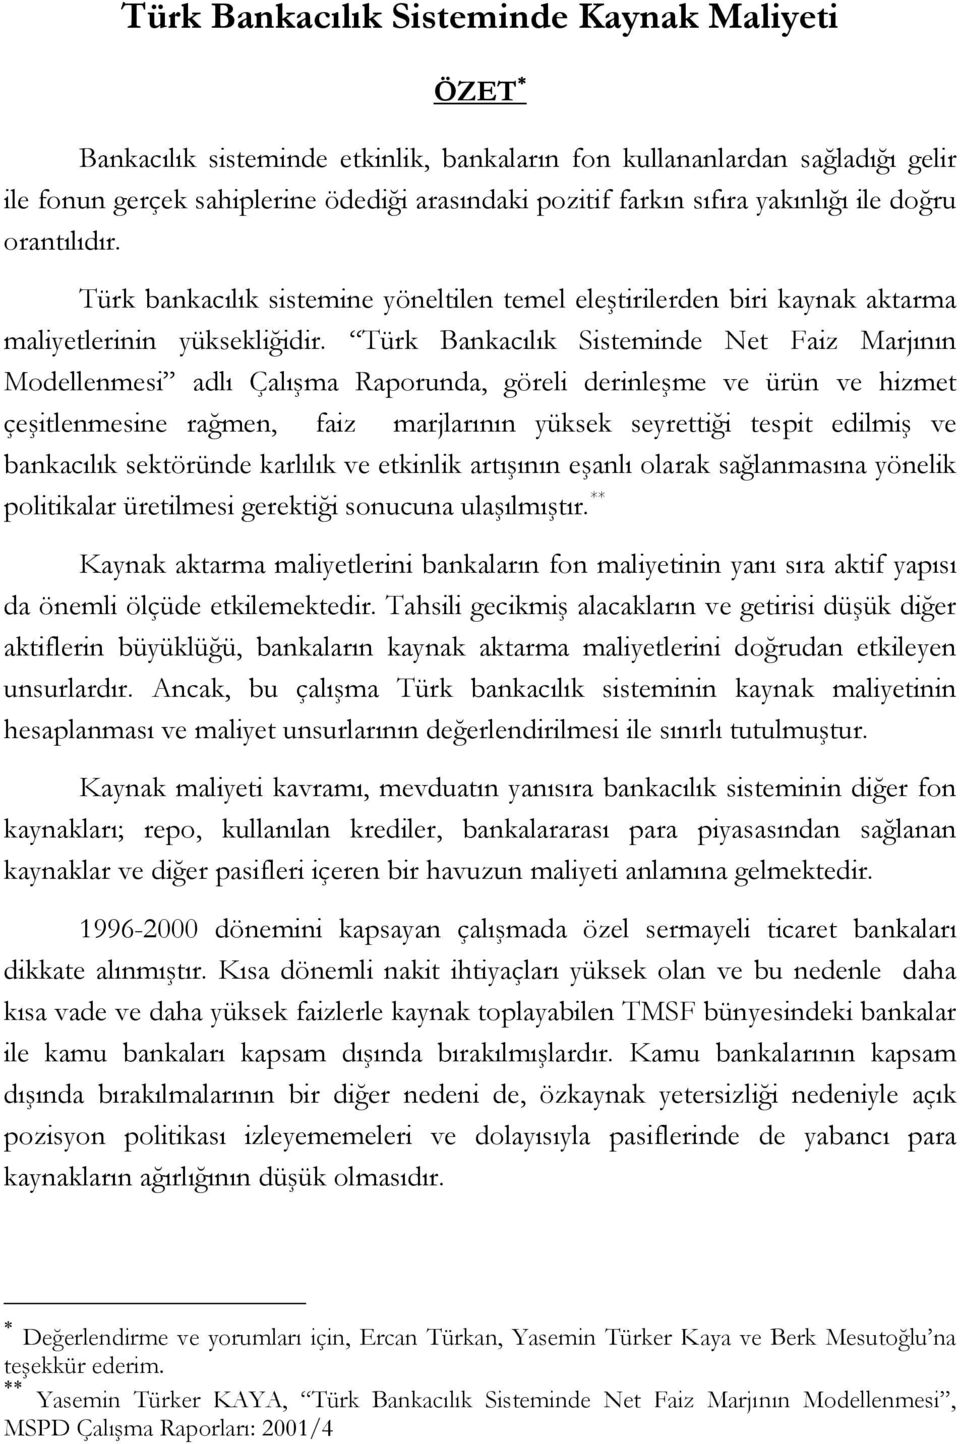 Türk Bankacılık Sisteminde Net Faiz Marjının Modellenmesi adlı Çalışma Raporunda, göreli derinleşme ve ürün ve hizmet çeşitlenmesine rağmen, faiz marjlarının yüksek seyrettiği tespit edilmiş ve